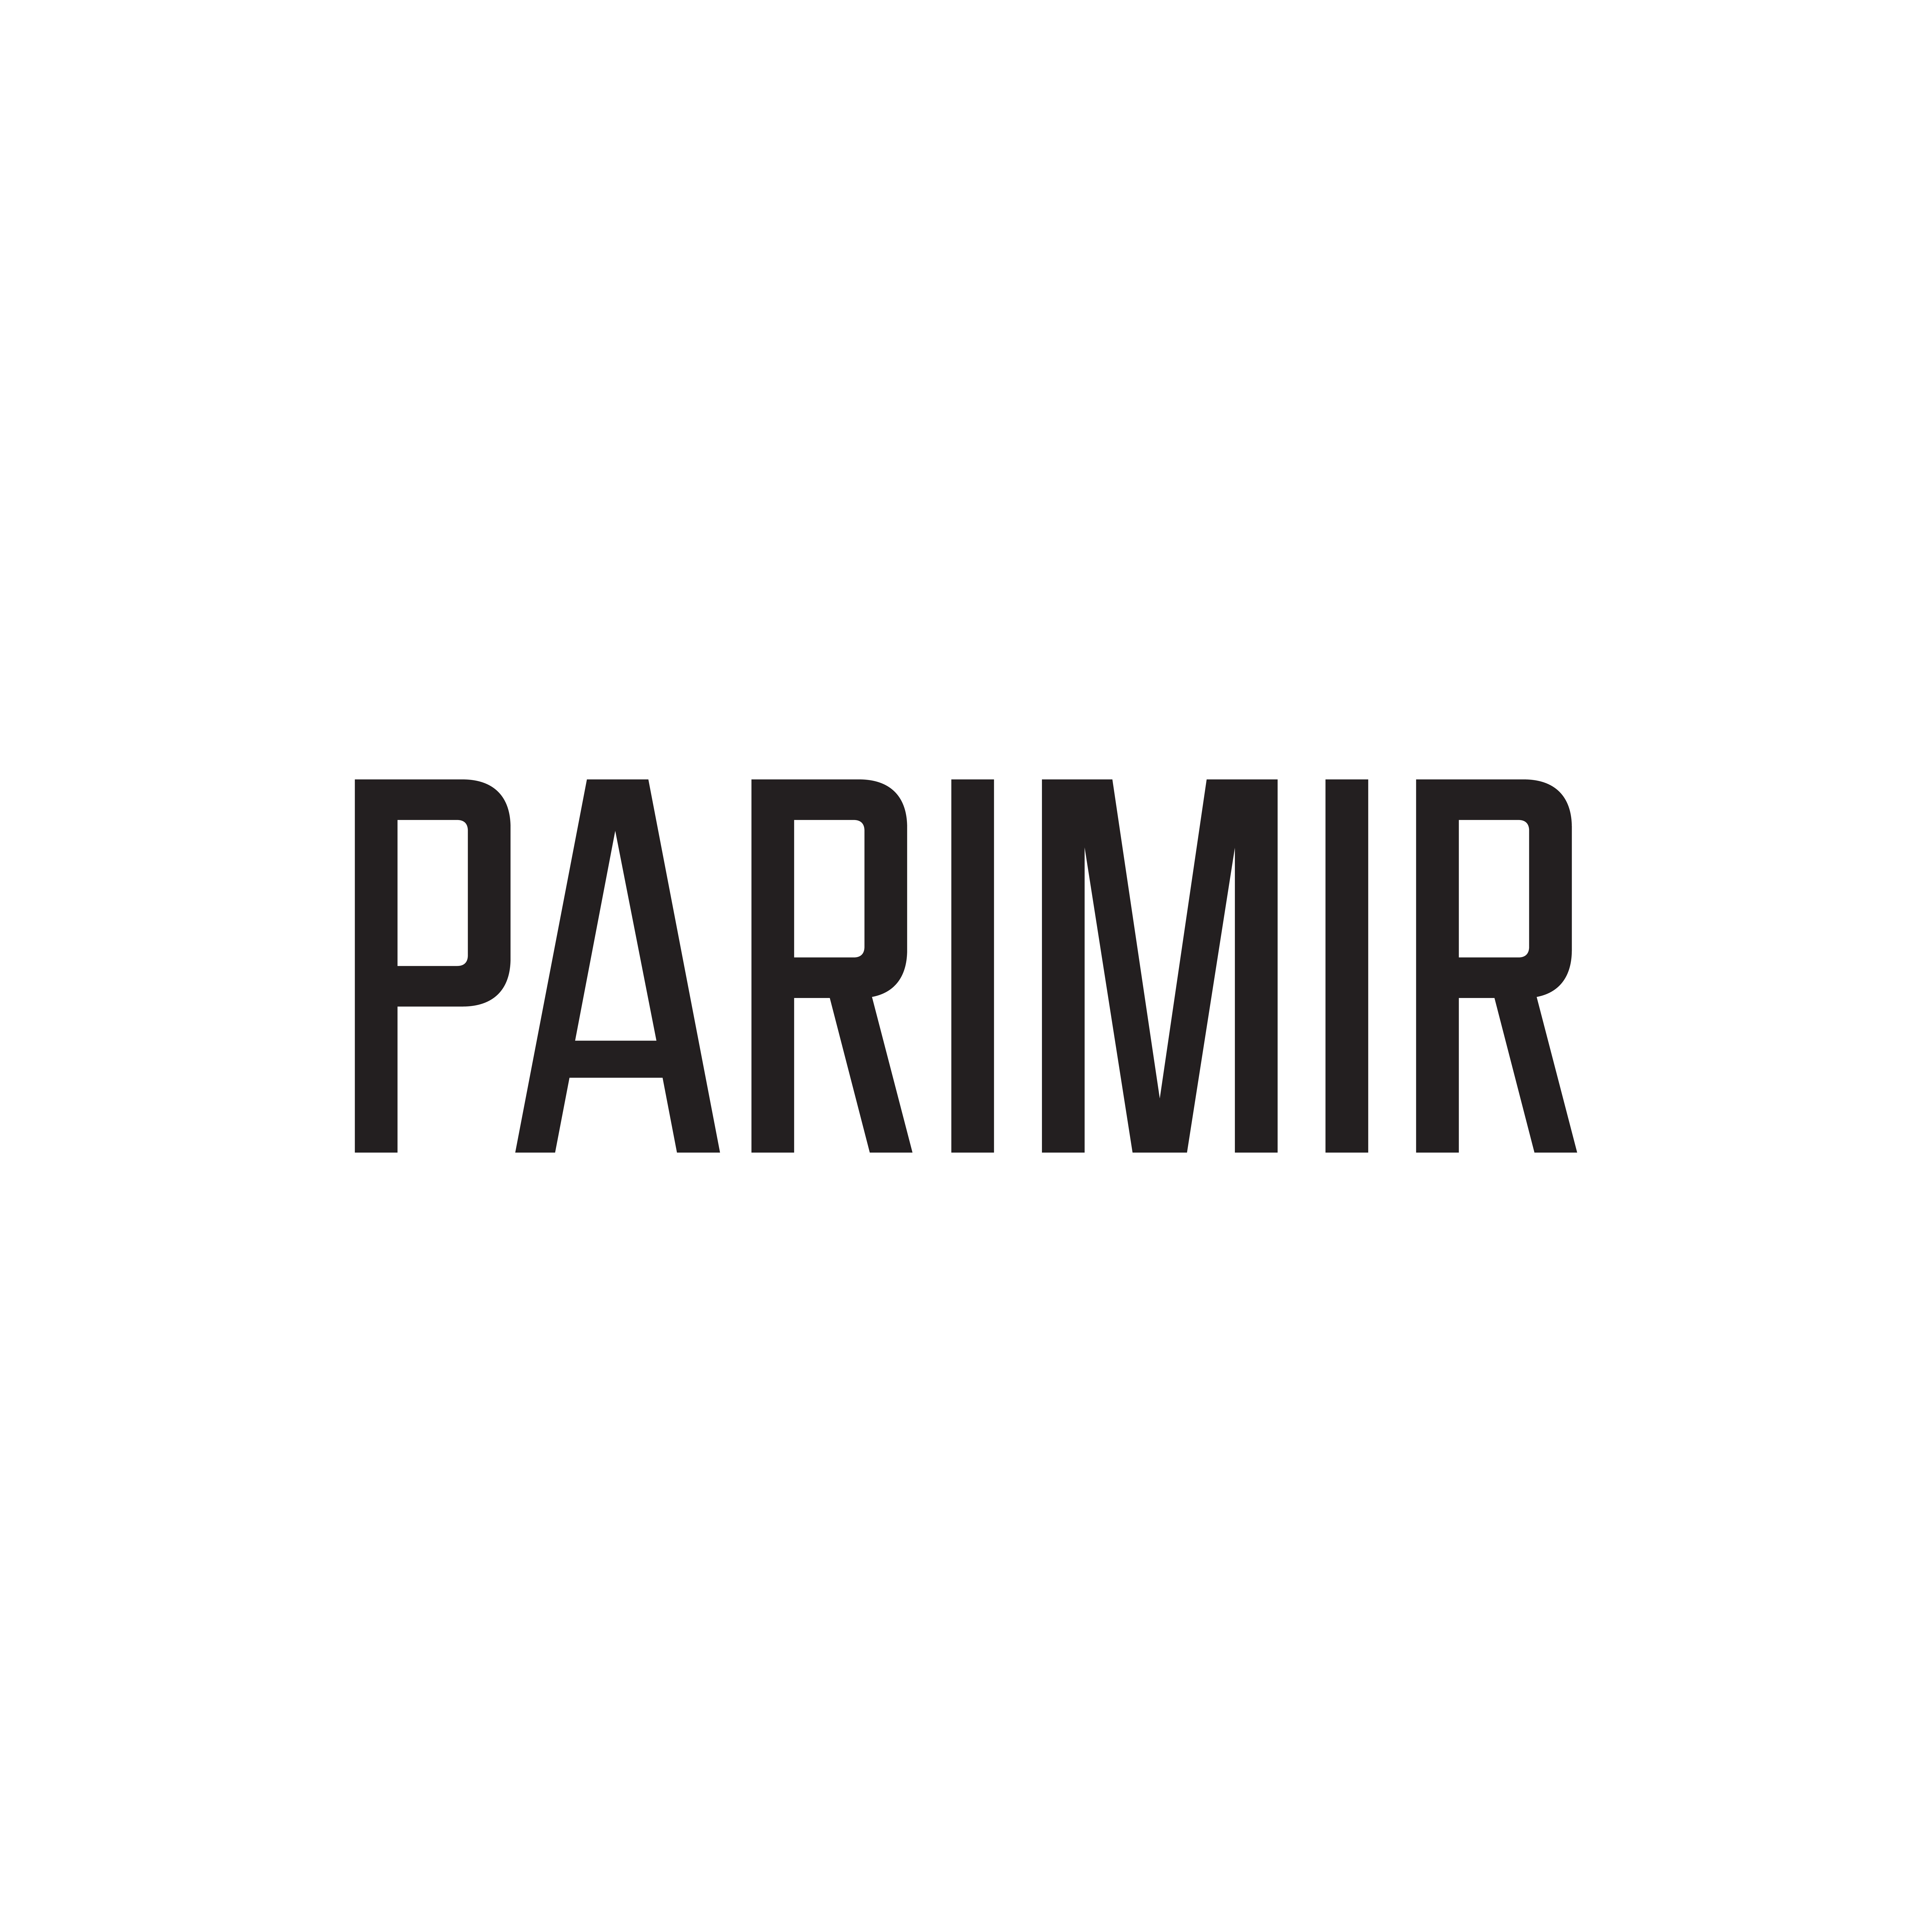 Parimir